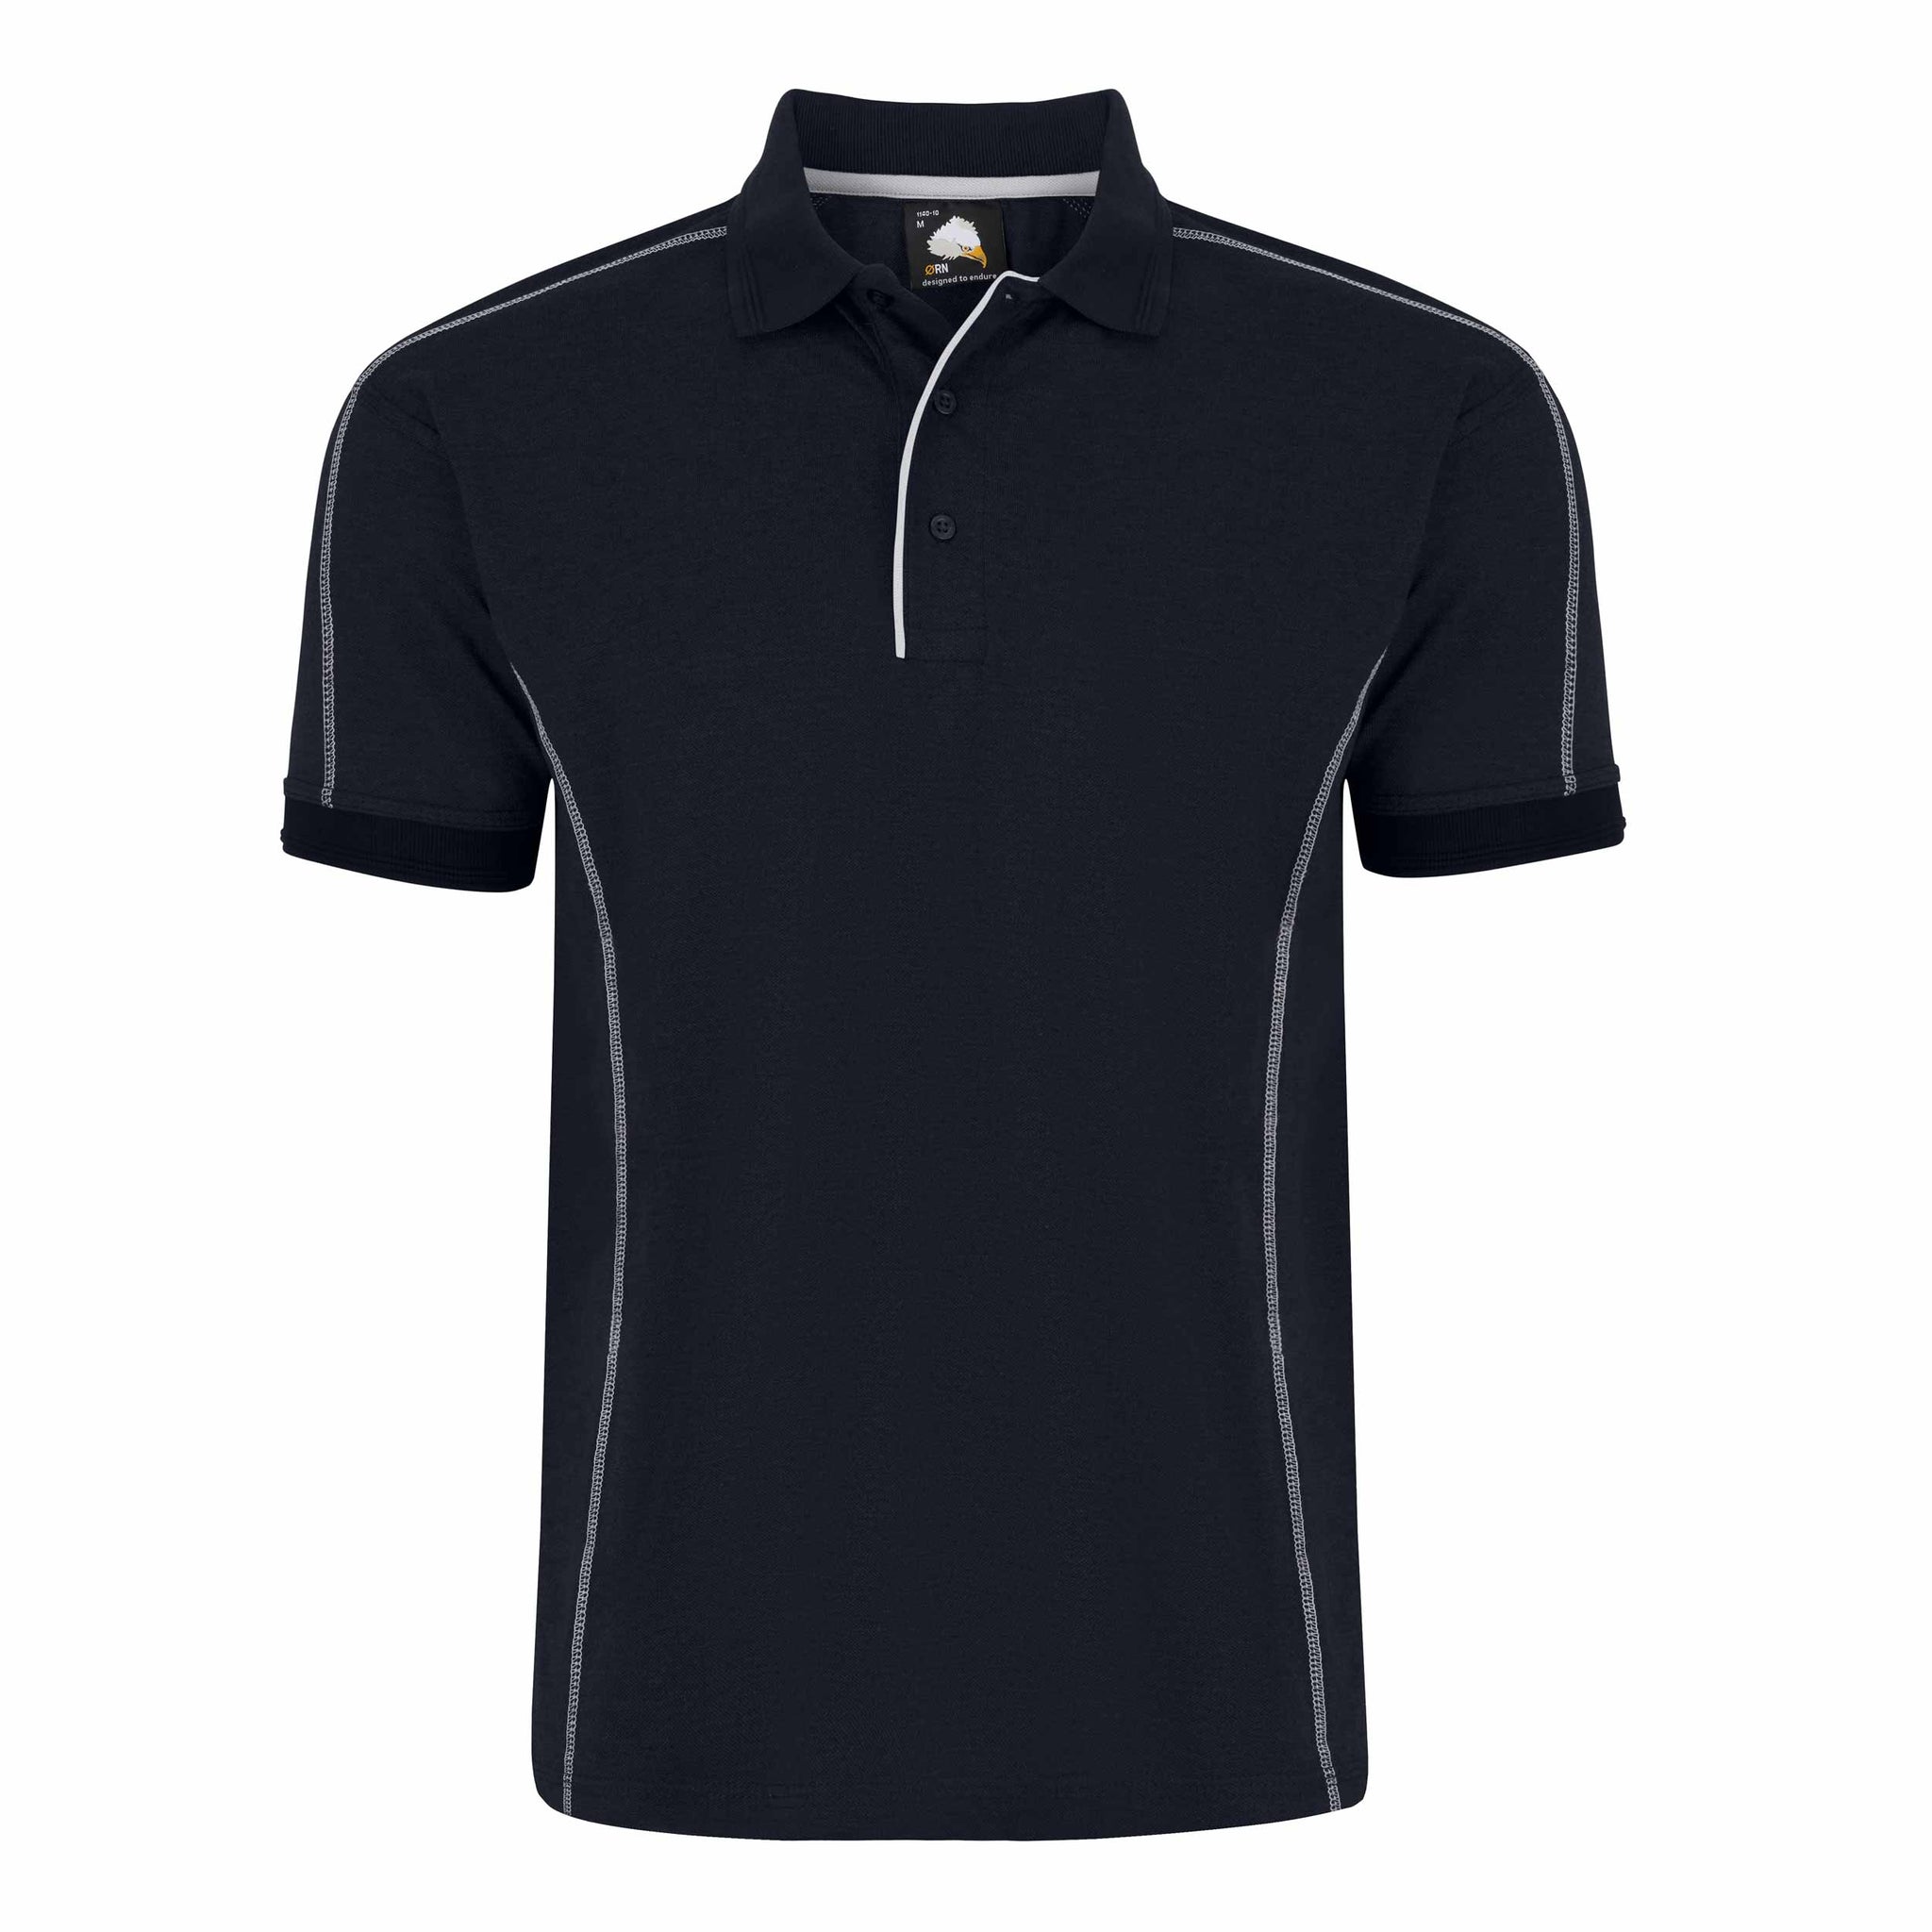 Poloshirt mit Kontraststreifen XS-5XL / 50% Polyester - 50% Baumwolle / 3 Farben / Crane